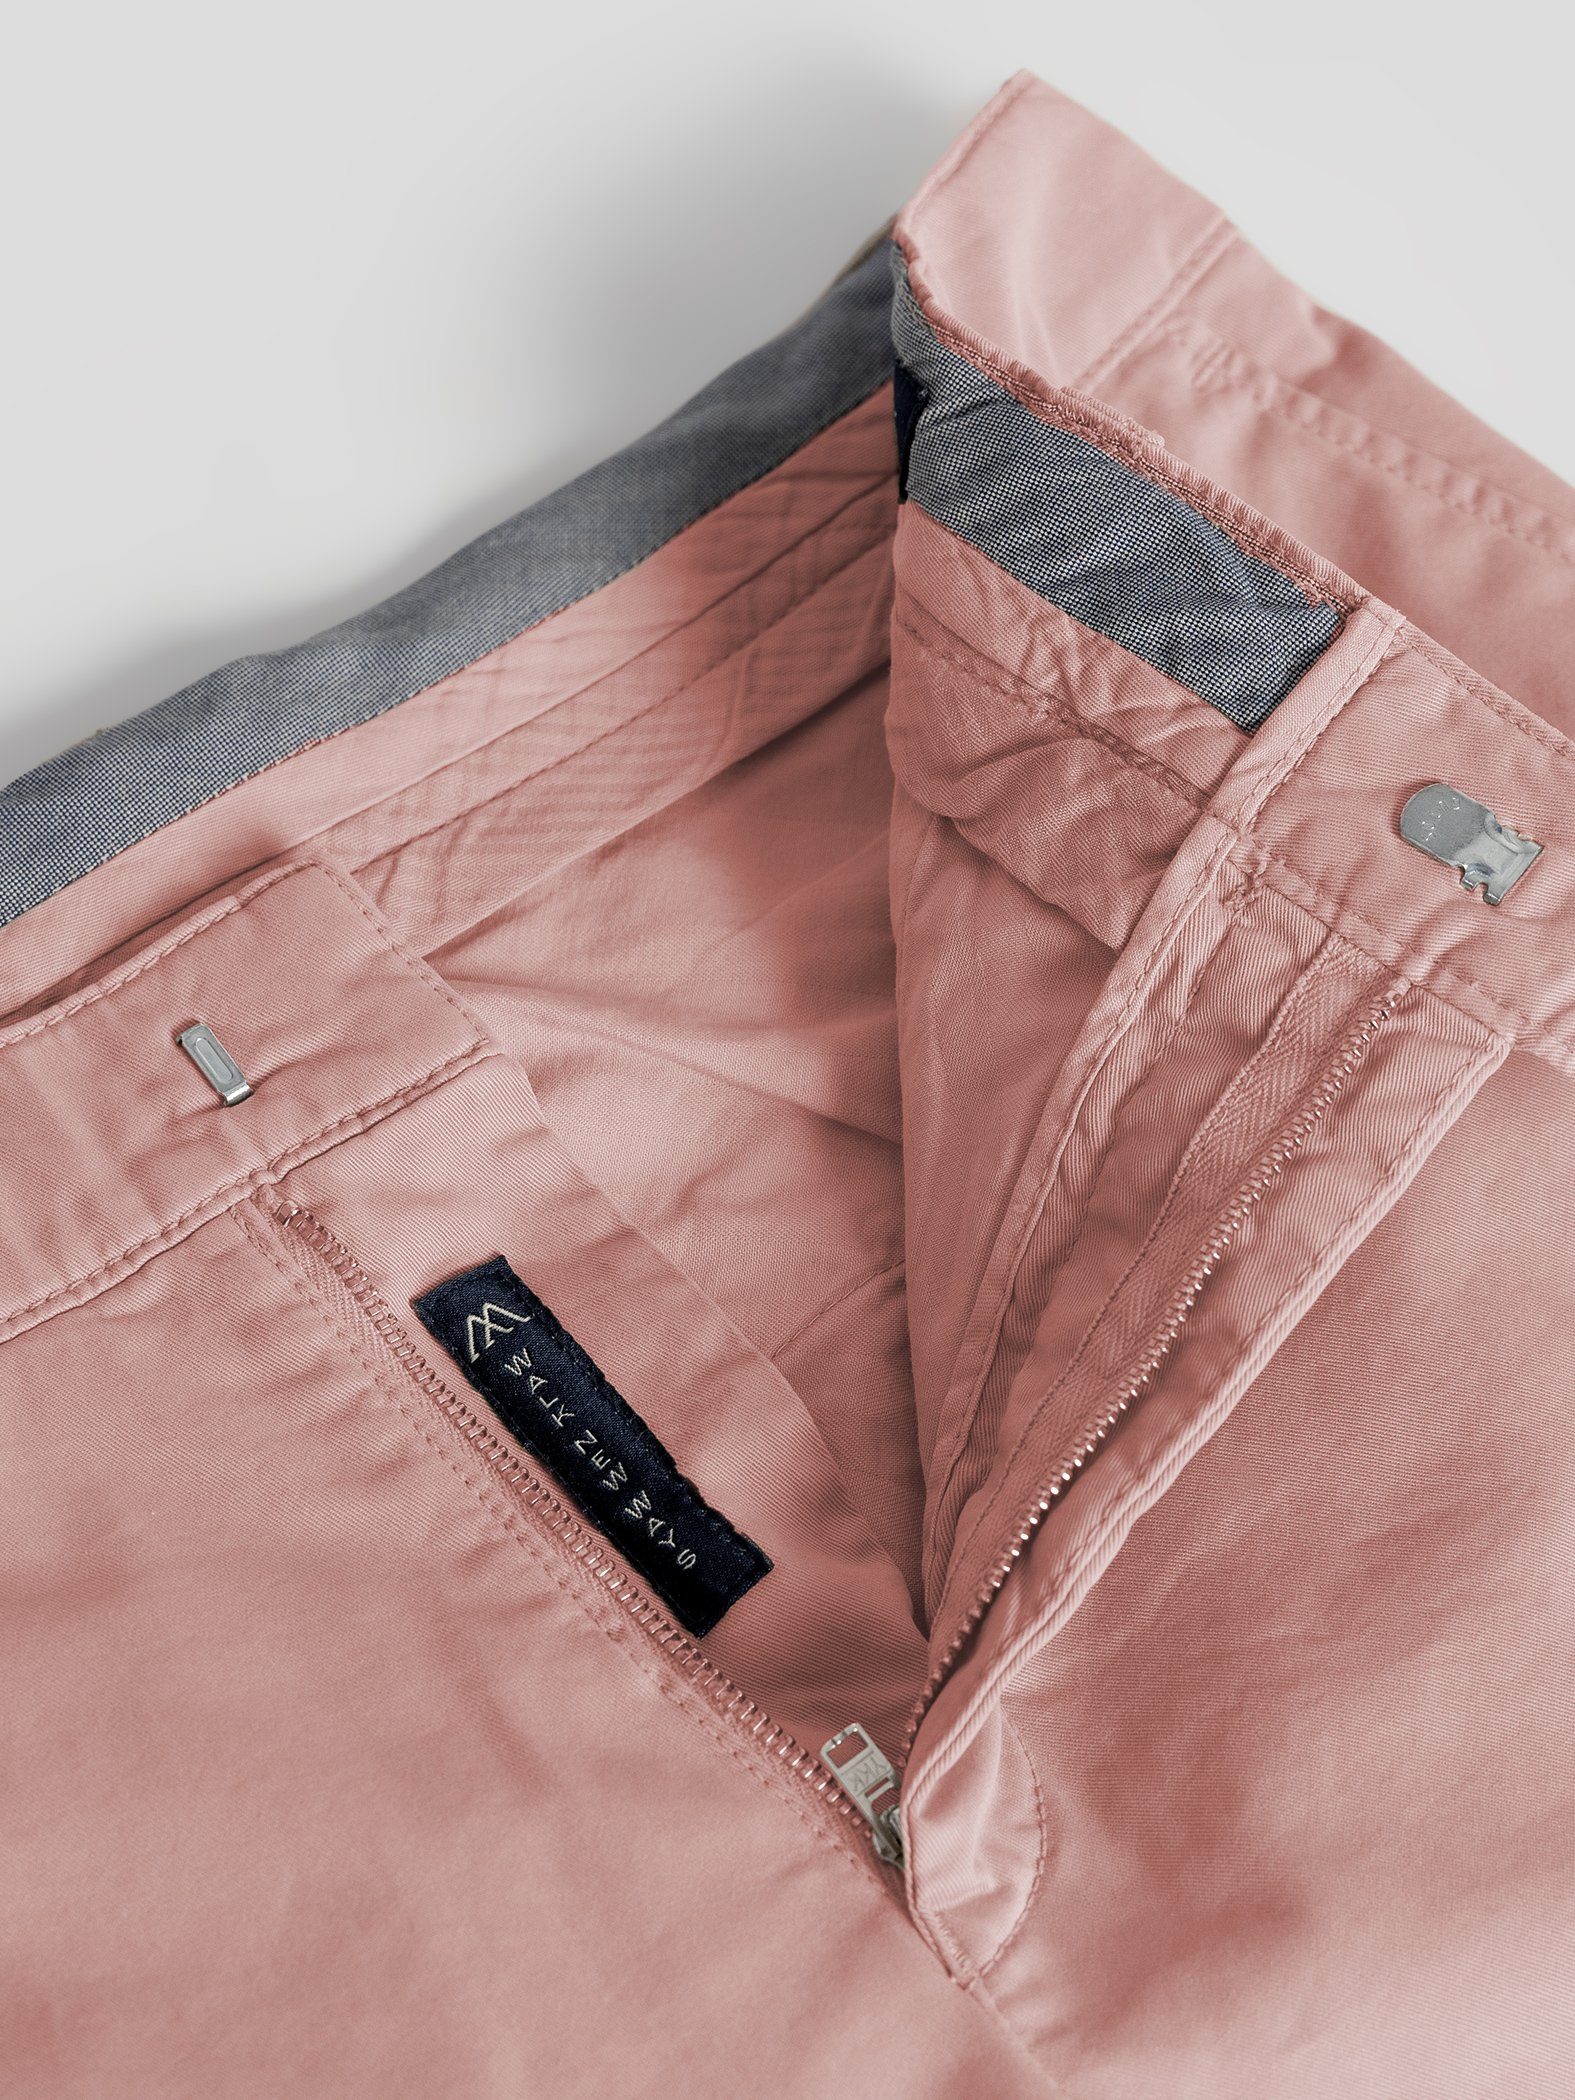 Shorts Bund, GOTS-zertifiziert rosa elastischem TwoMates Shorts mit Farbauswahl,